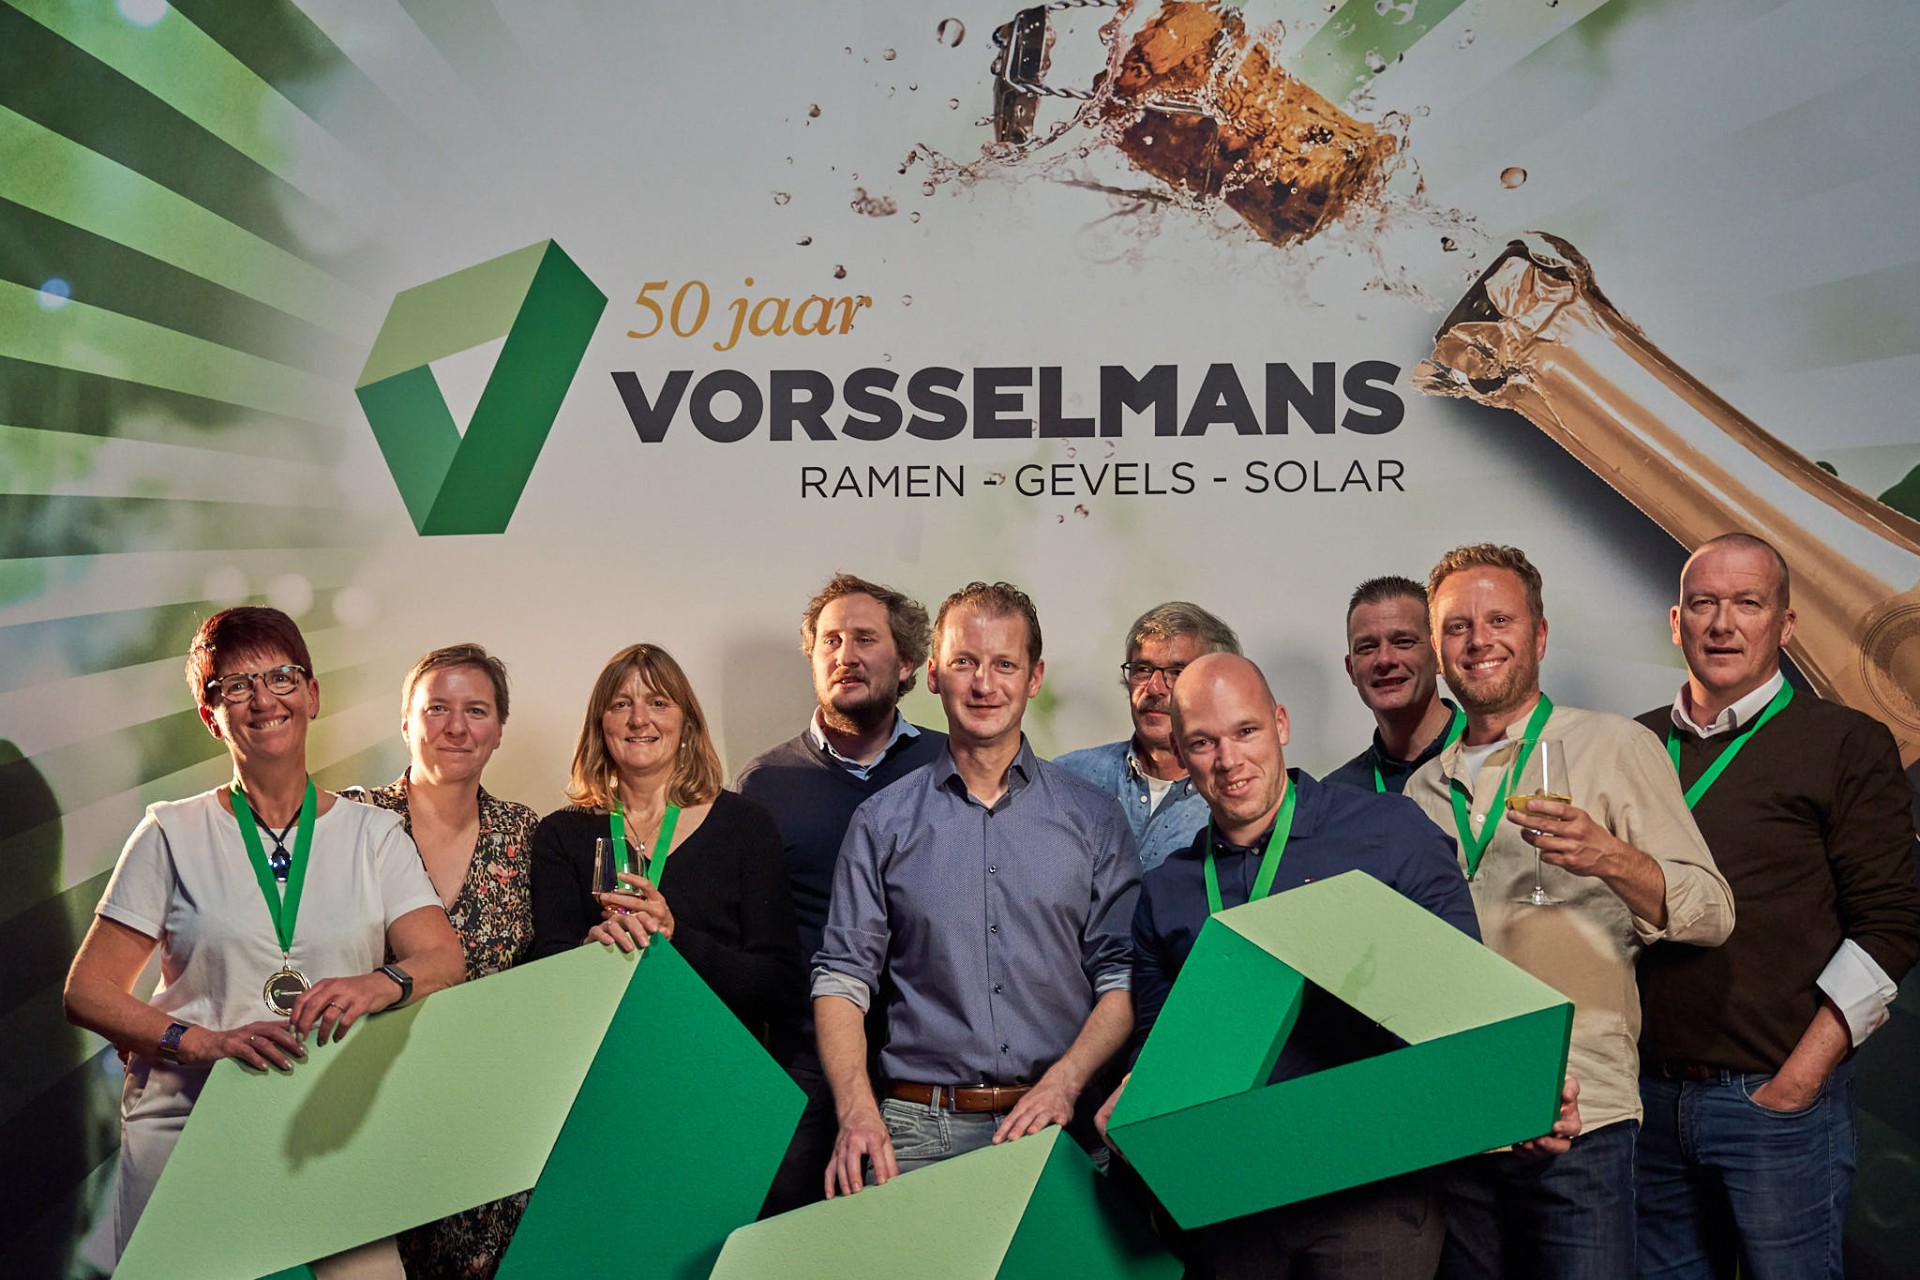 Vorsselmans teamfoto's feest 50 jaar